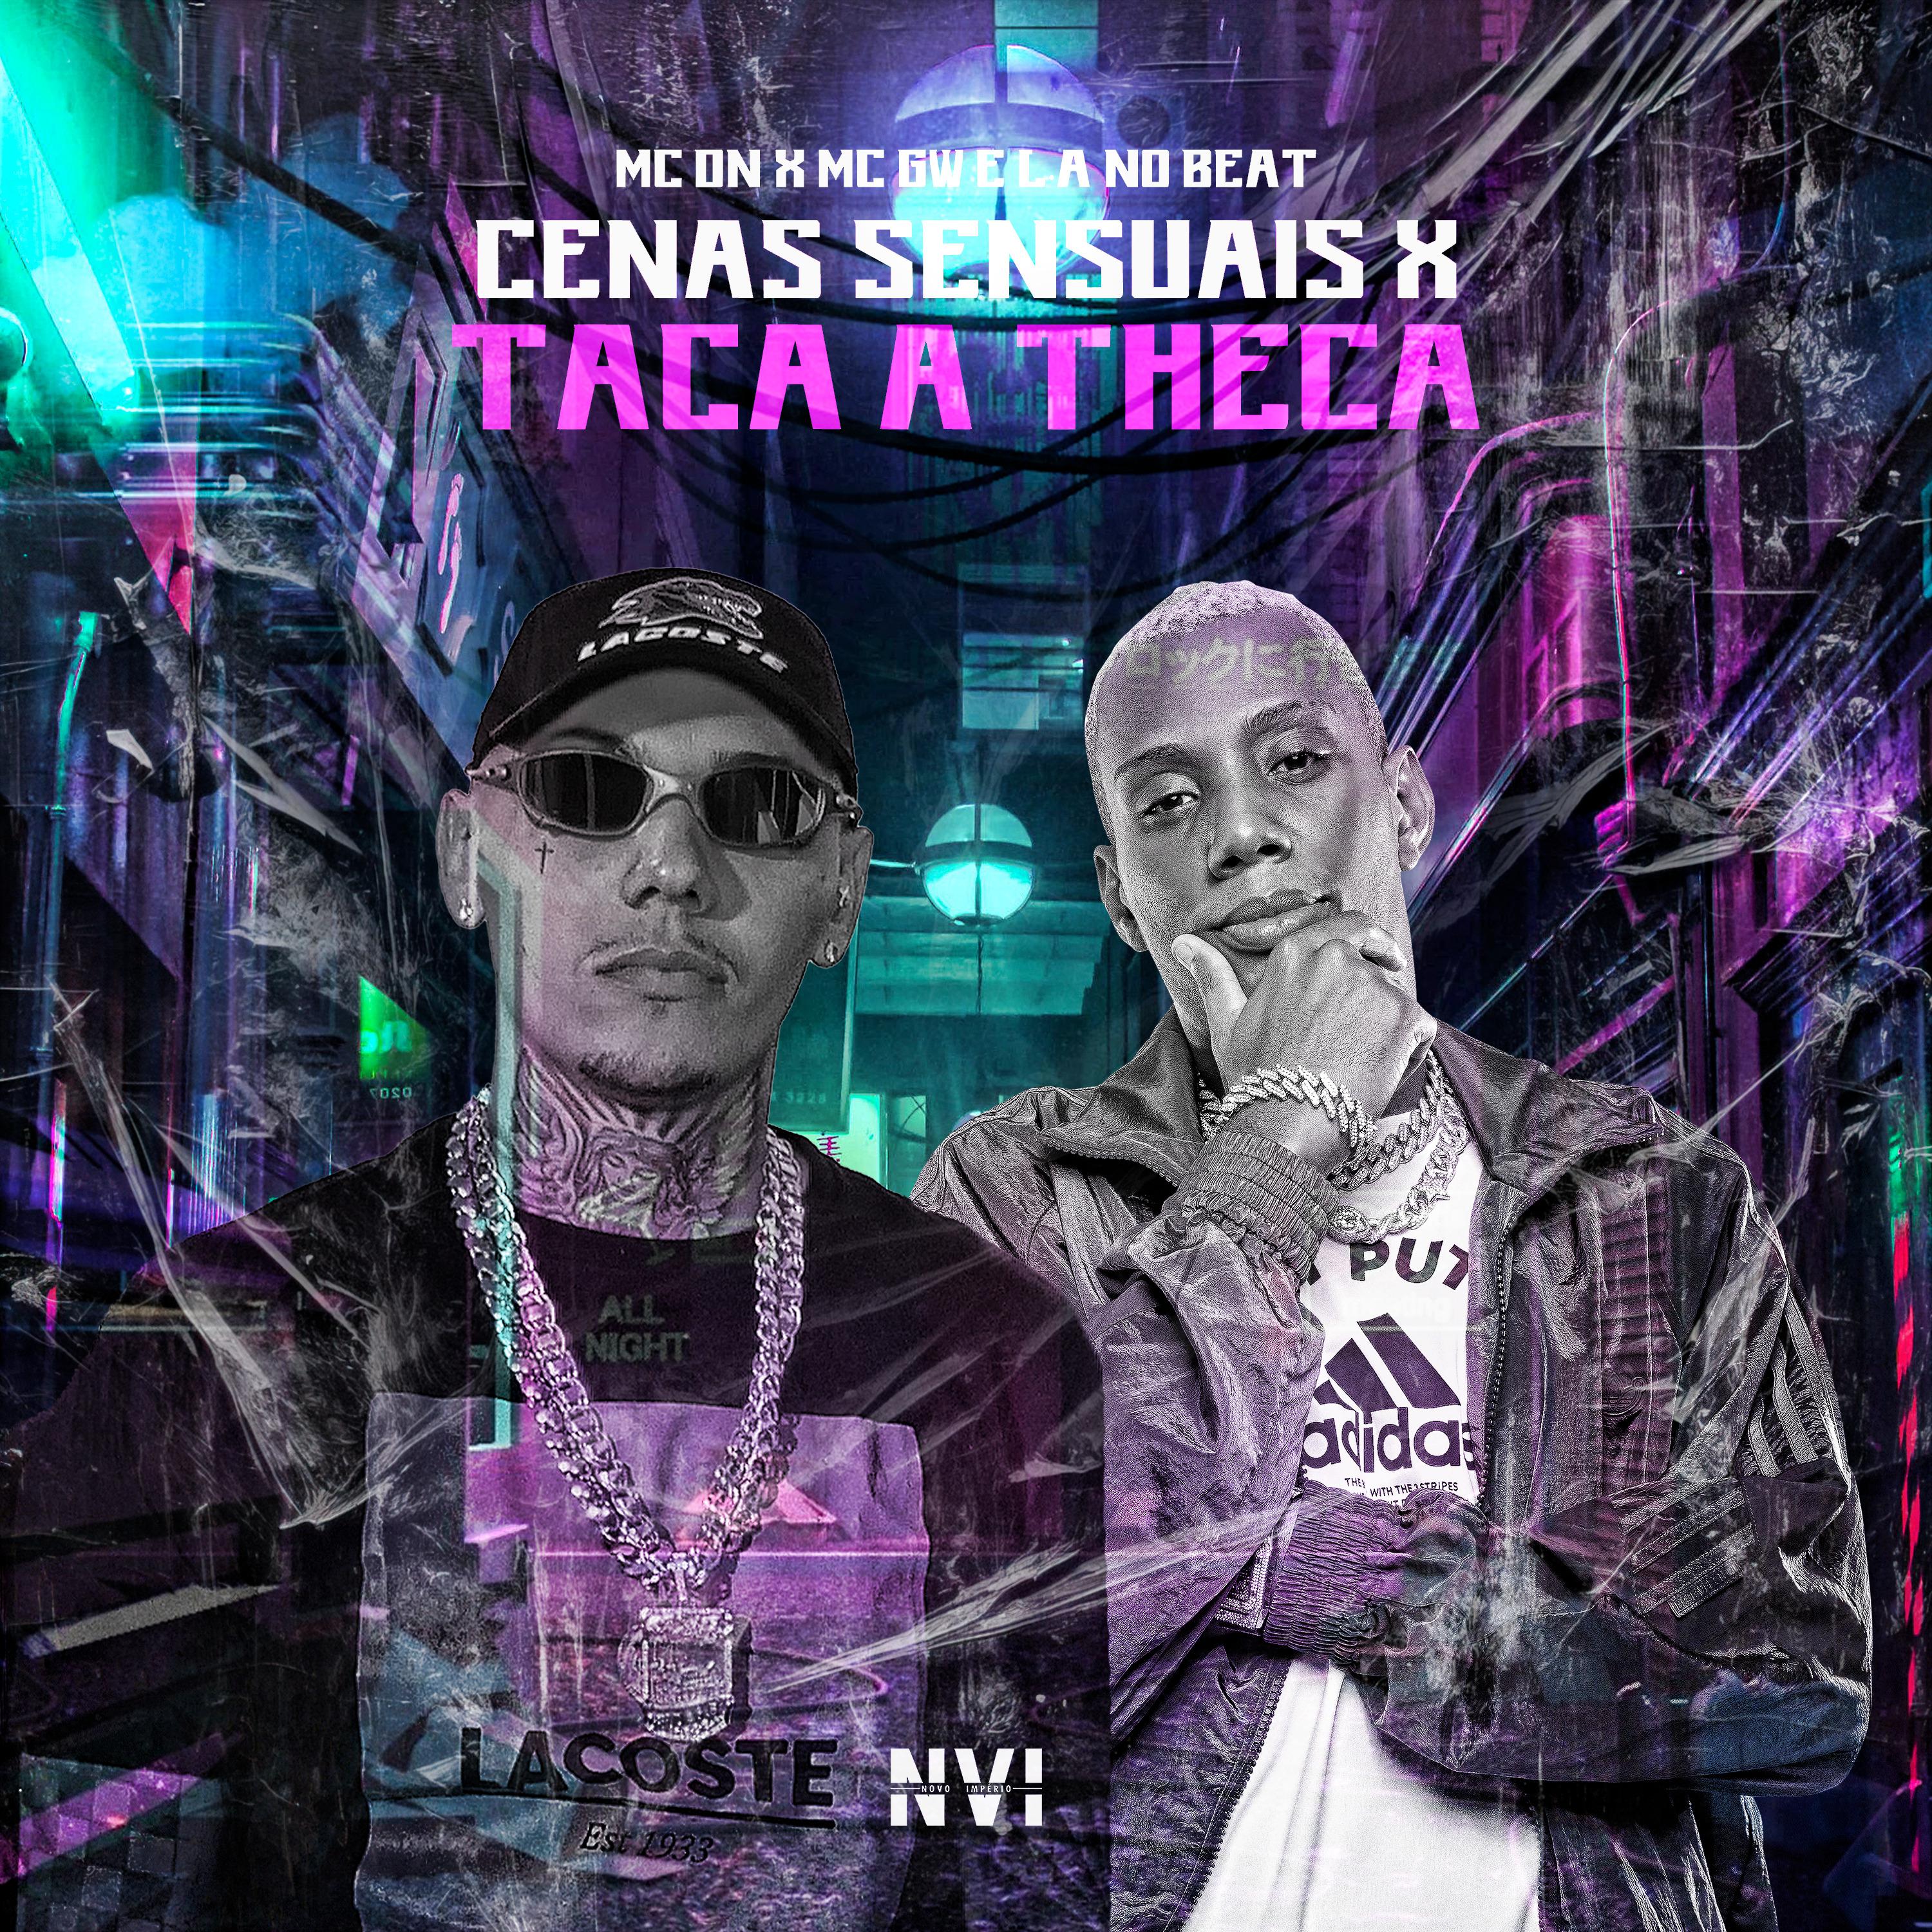 Постер альбома Cenas Sensuais X Taca a Theca